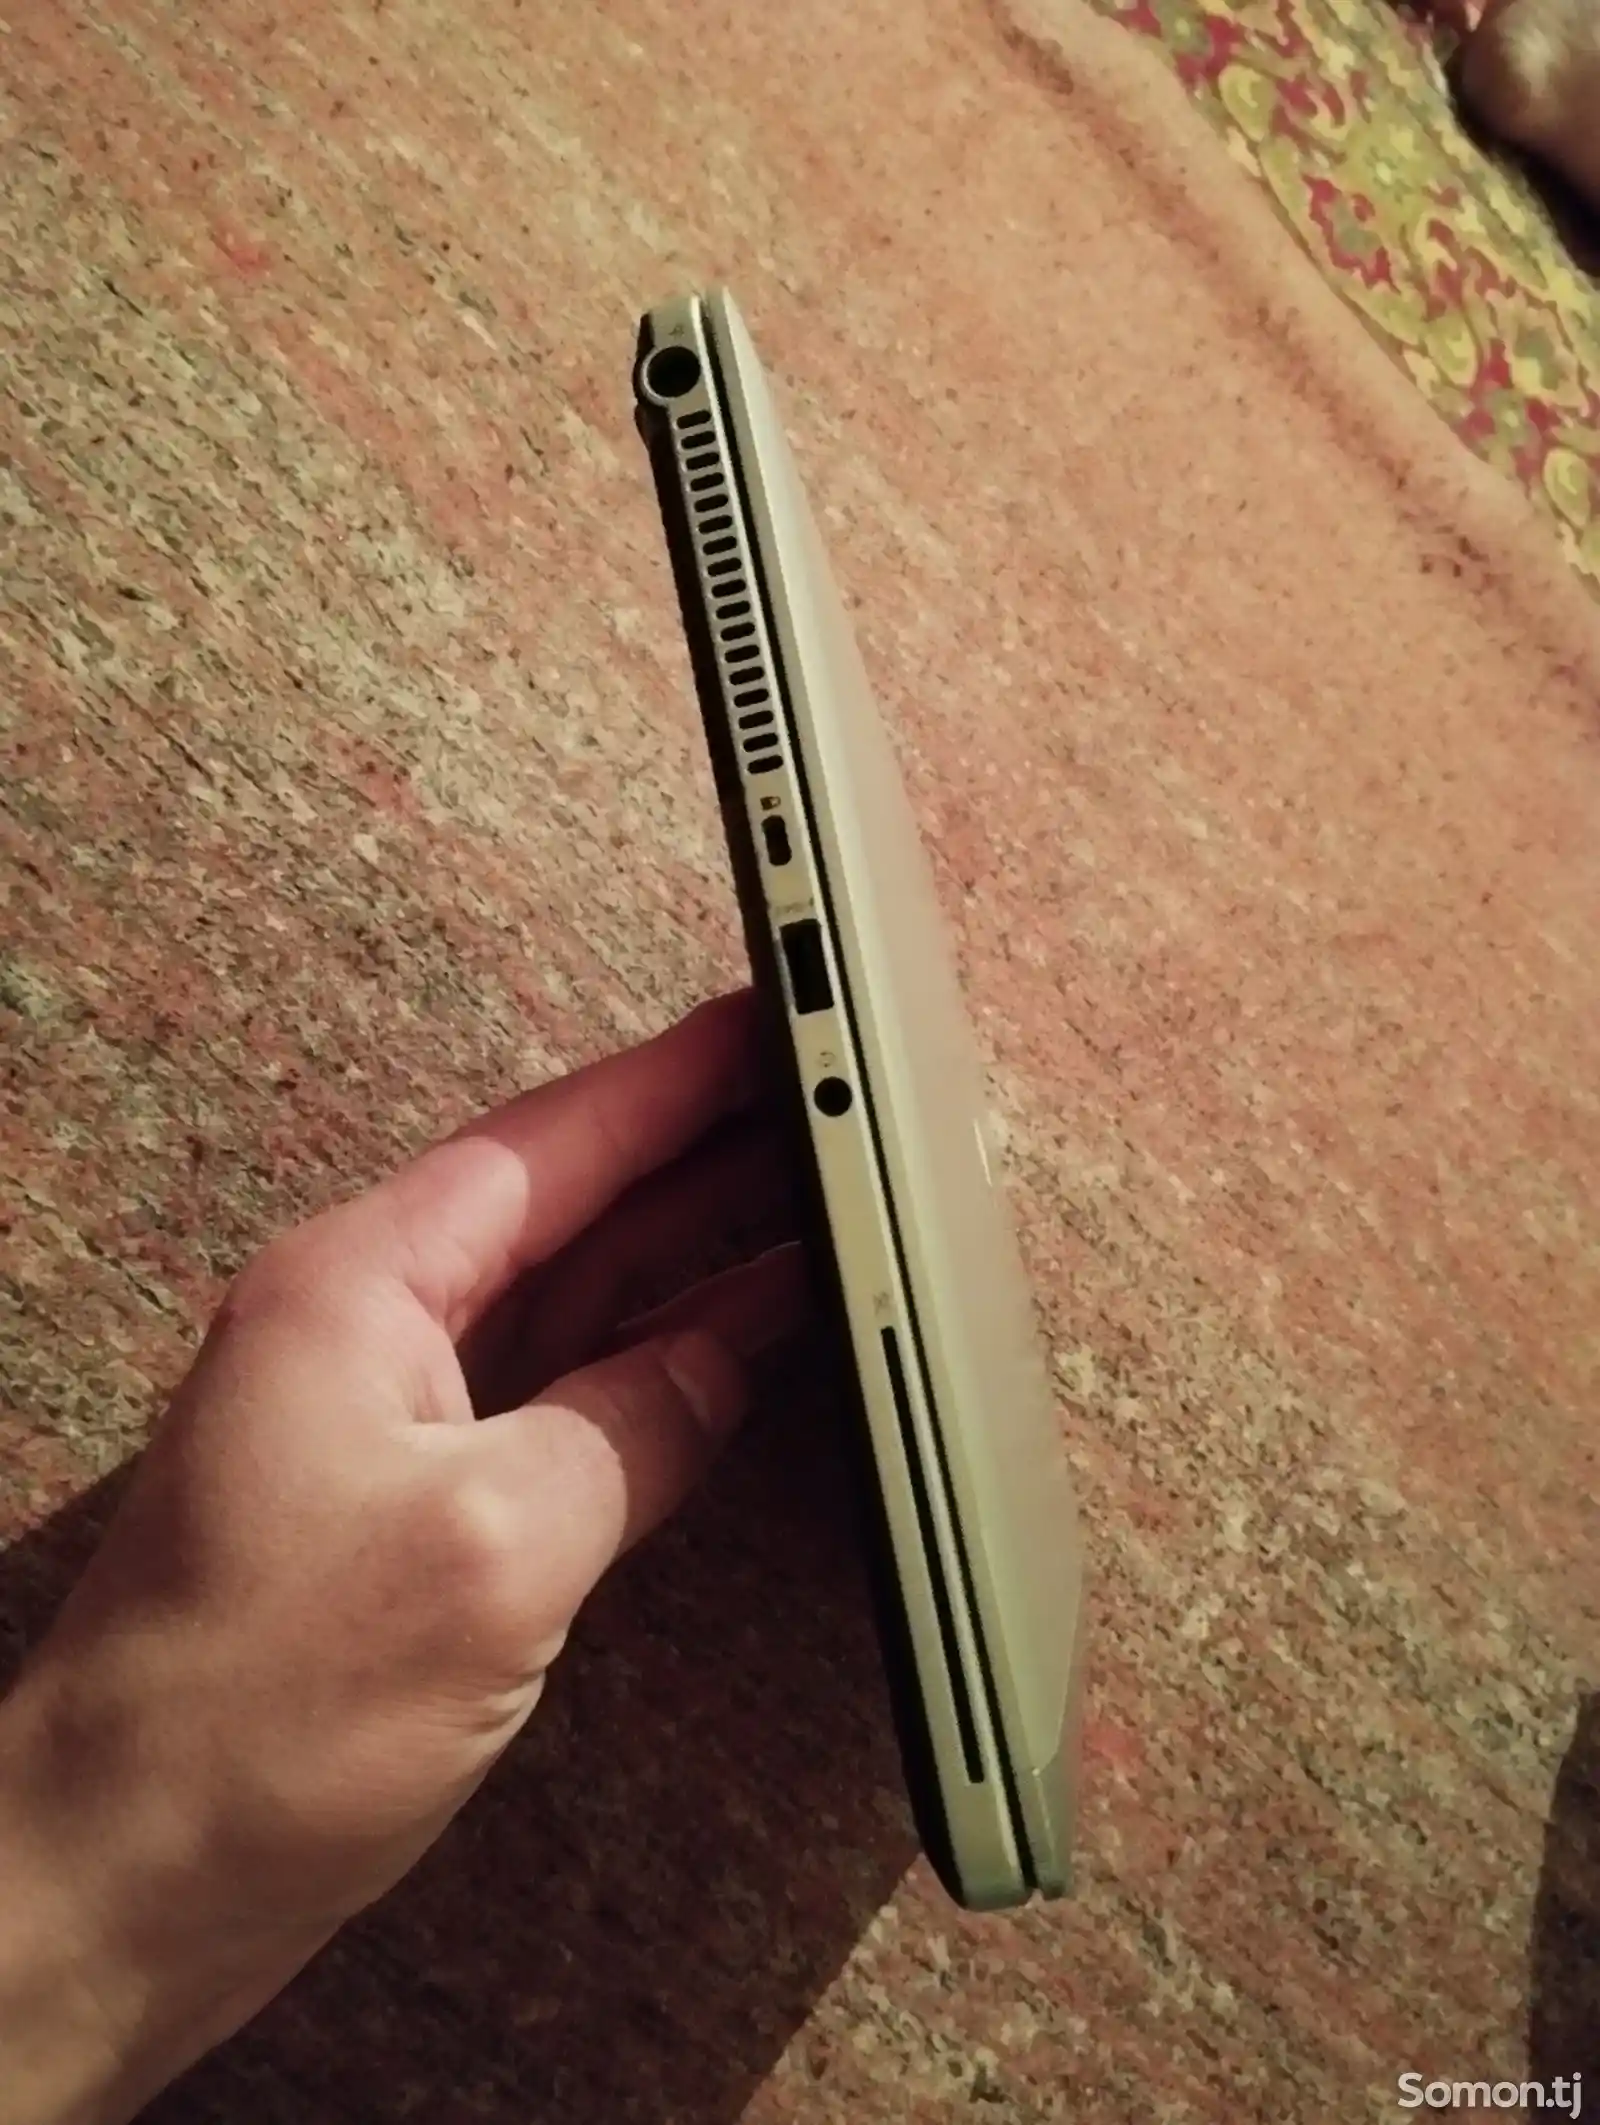 Игровой ноутбук HP-2